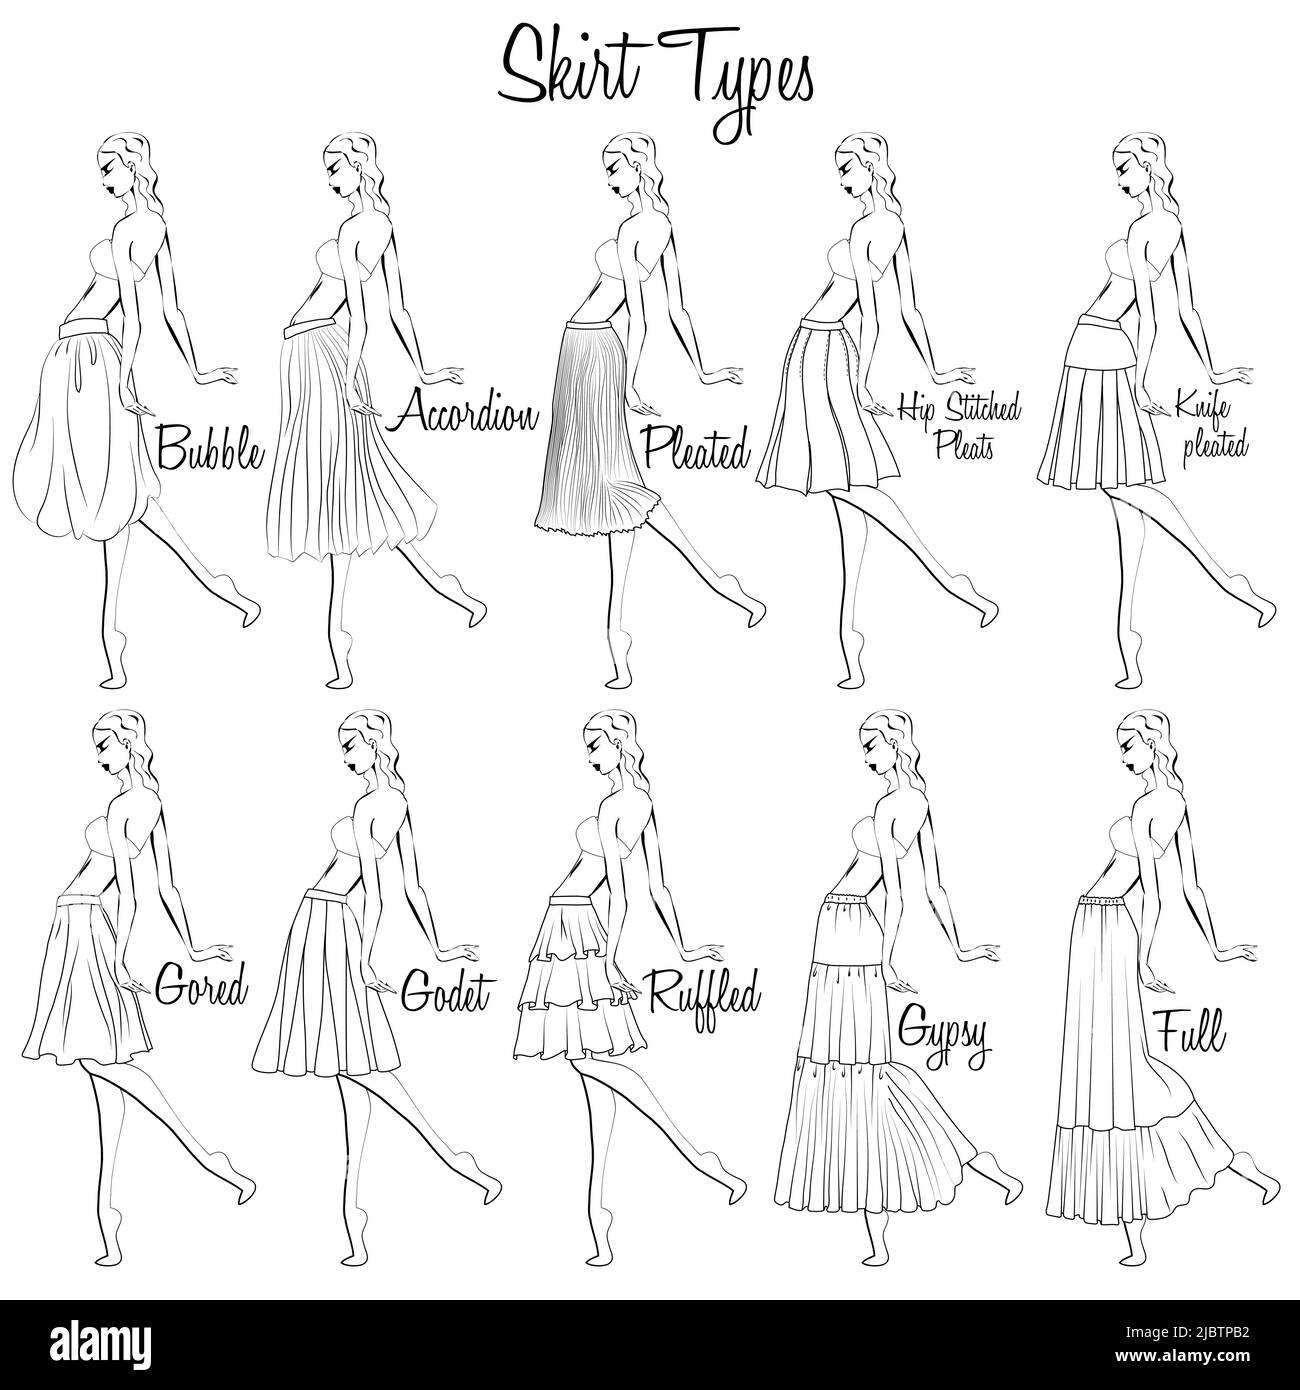 Rockstil. Eine visuelle Darstellung der Stile der Röcke auf der Figur. Illustration des Designs und der Vielfalt der Damenröcke. Stock Vektor